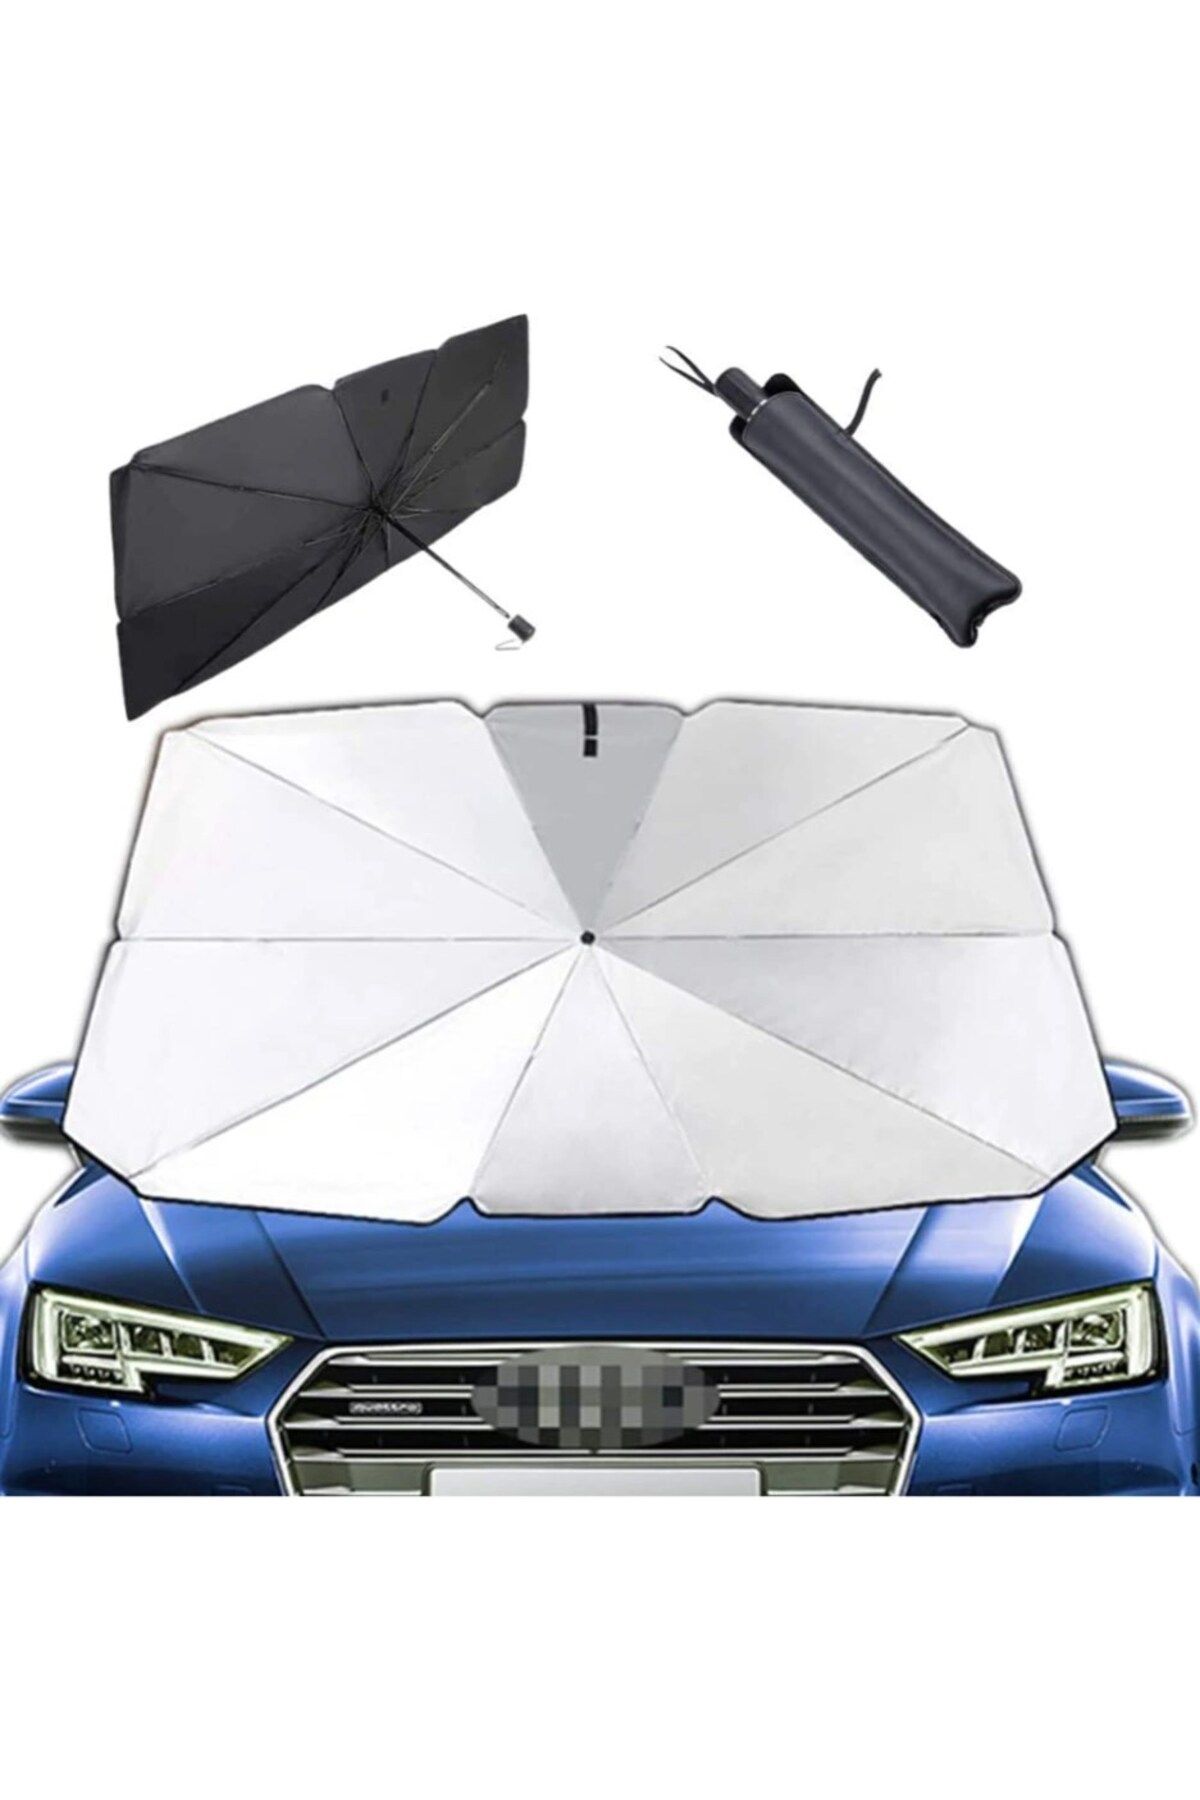 Techmaster Araç Oto Güneşlik Katlanabilir Şemsiye Ön Cam Güneşlik 145cm-79cm